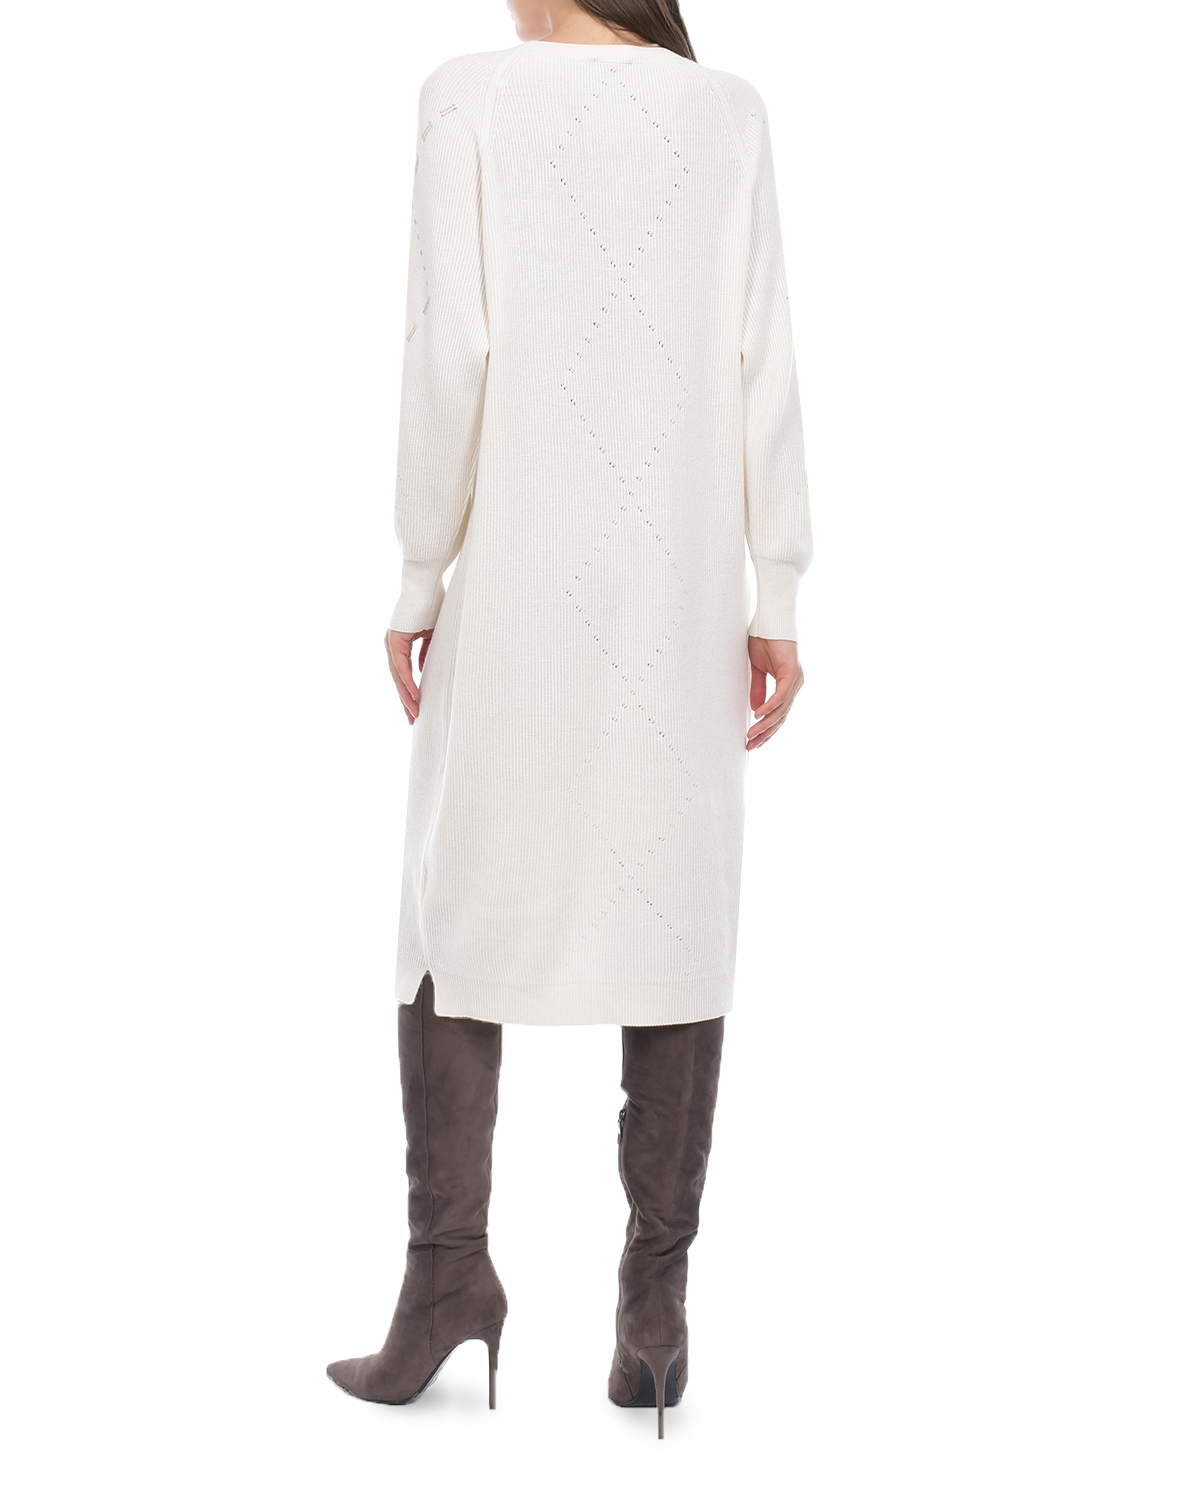 Платье из шерсти и шелка Panicale, размер 46, цвет кремовый - фото 3